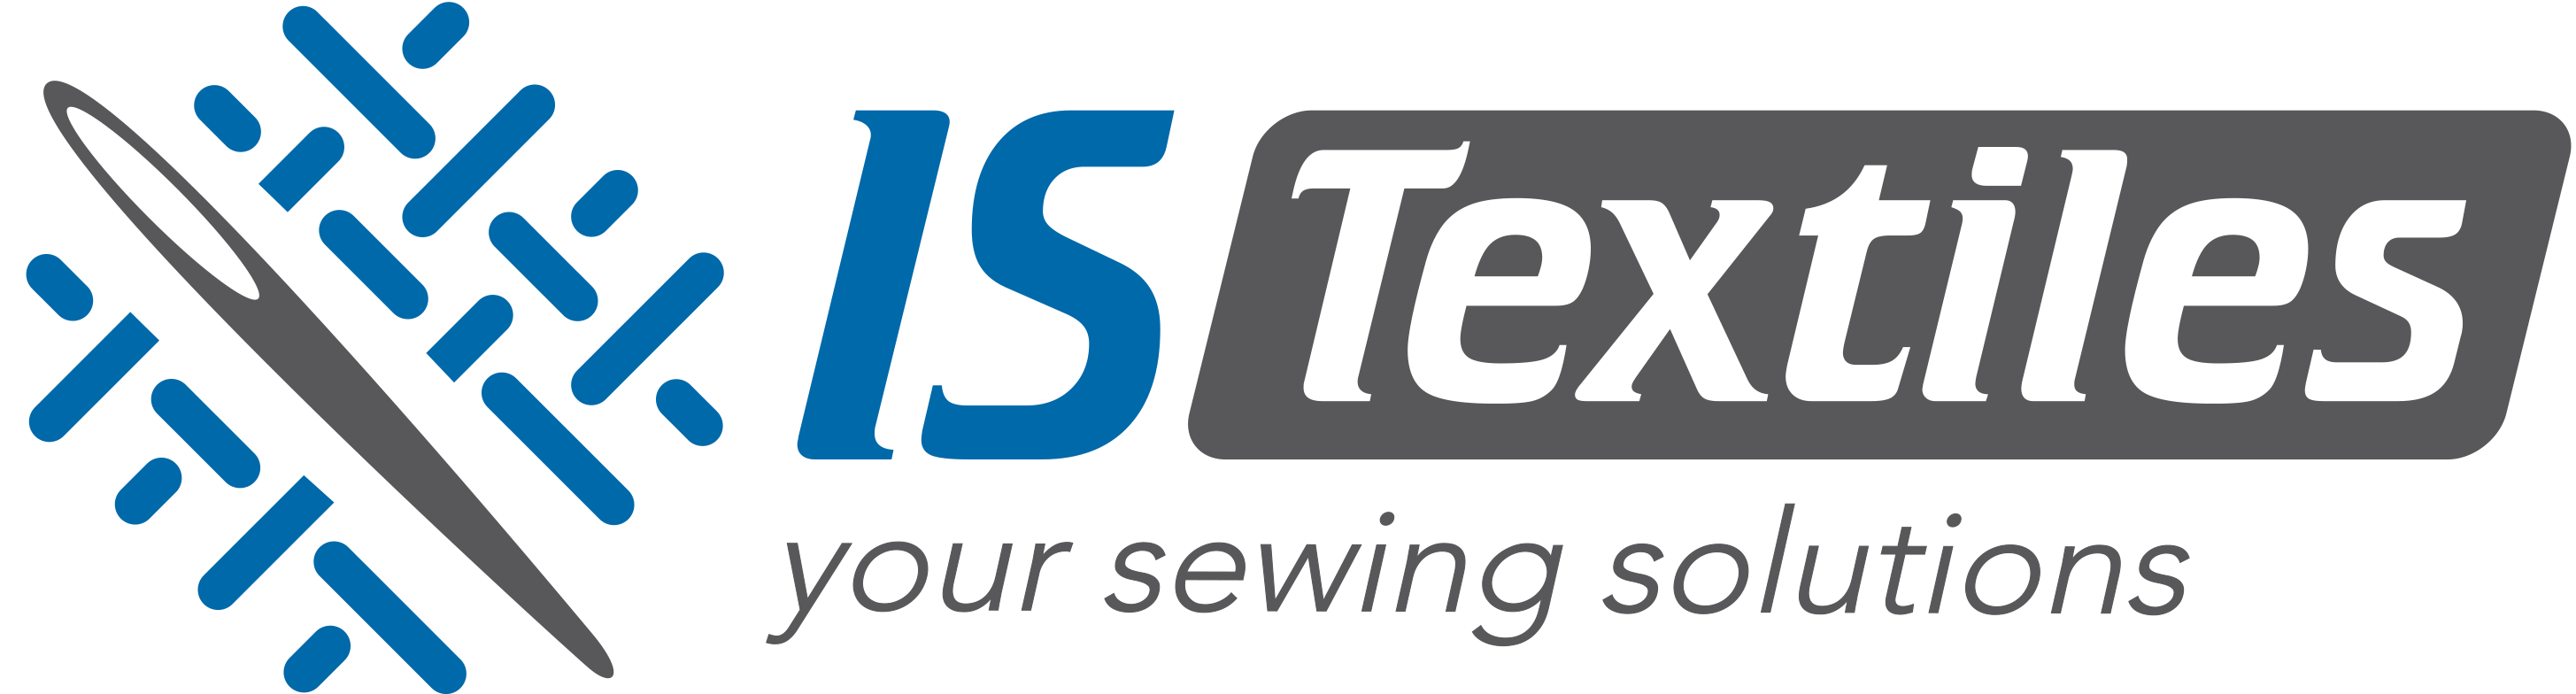 IS Textiles